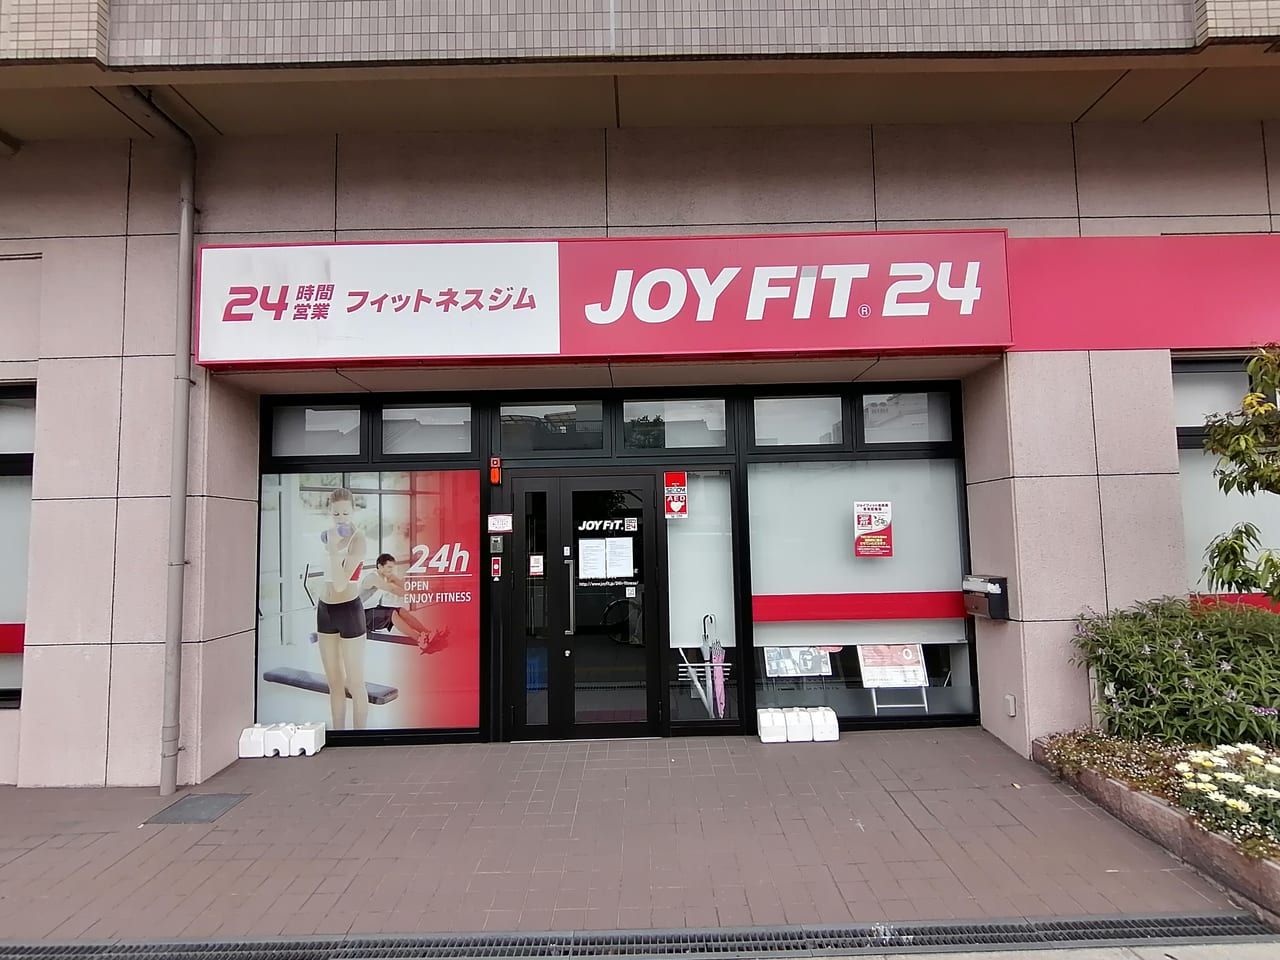 大阪市旭区 9月1日に Joyfit24新森古市 リニューアルオープンするようです 号外net 都島区 旭区